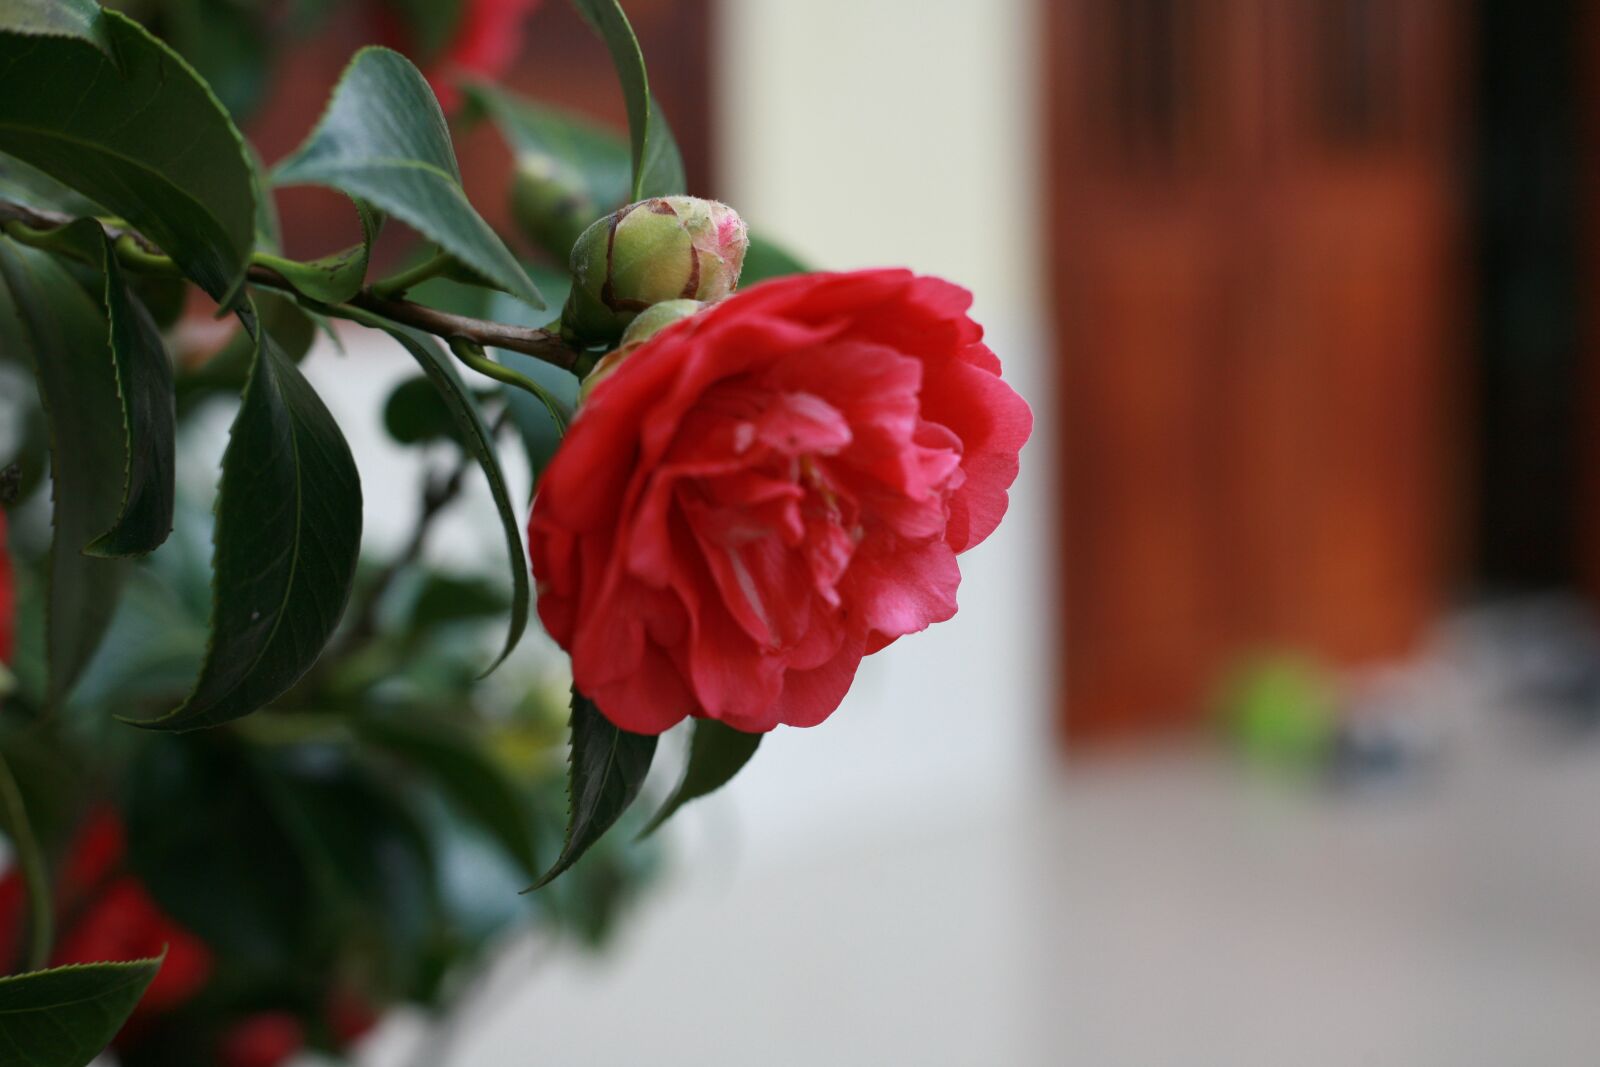 Canon EOS 5D sample photo. Camellia, flower, garden photography